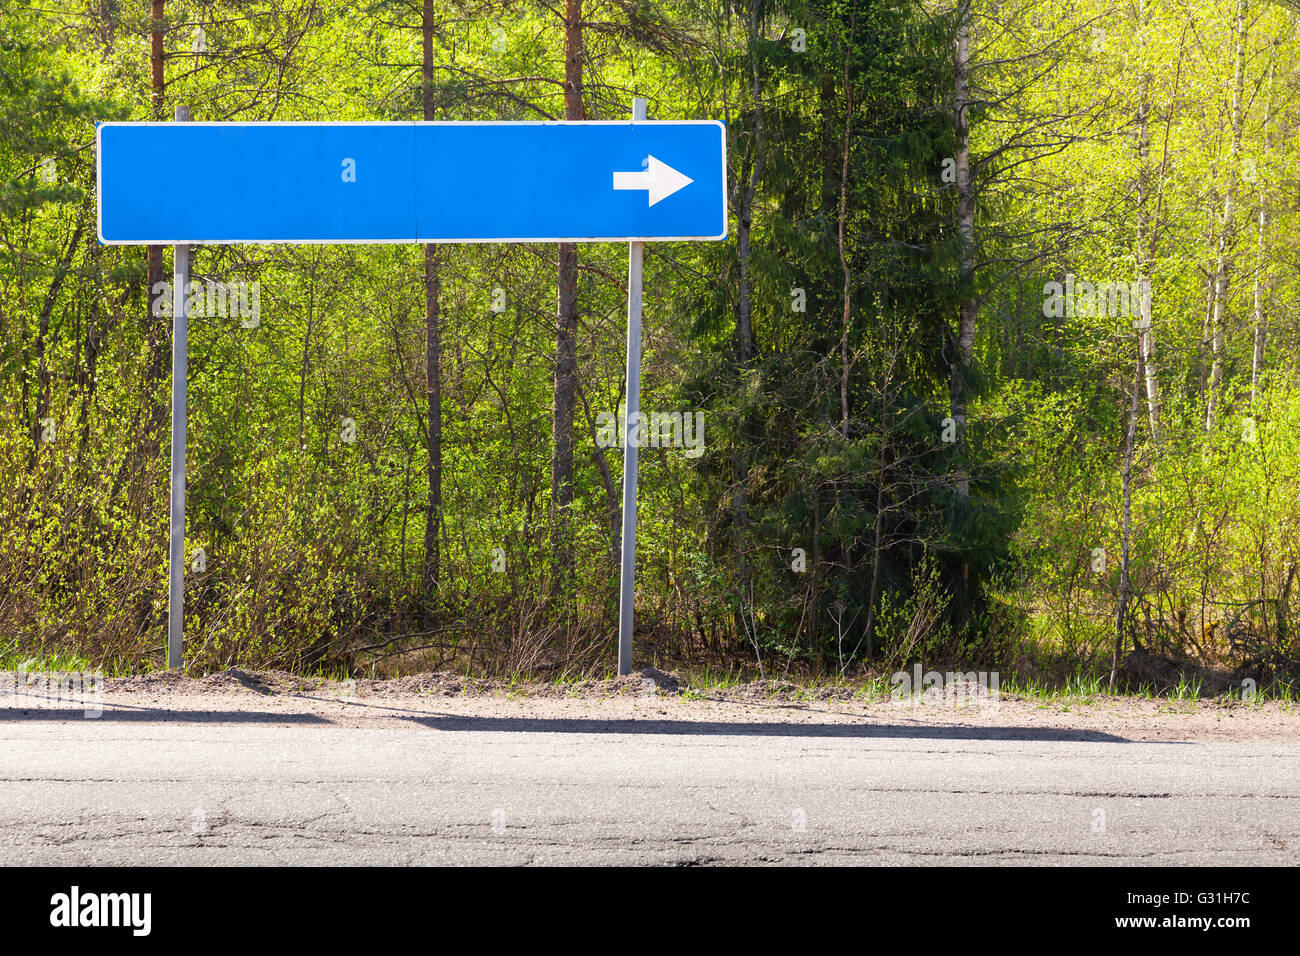 Señal de carretera azul, cerca de la autopista con el lugar de destino en blanco el nombre y la dirección de la flecha blanca Foto de stock